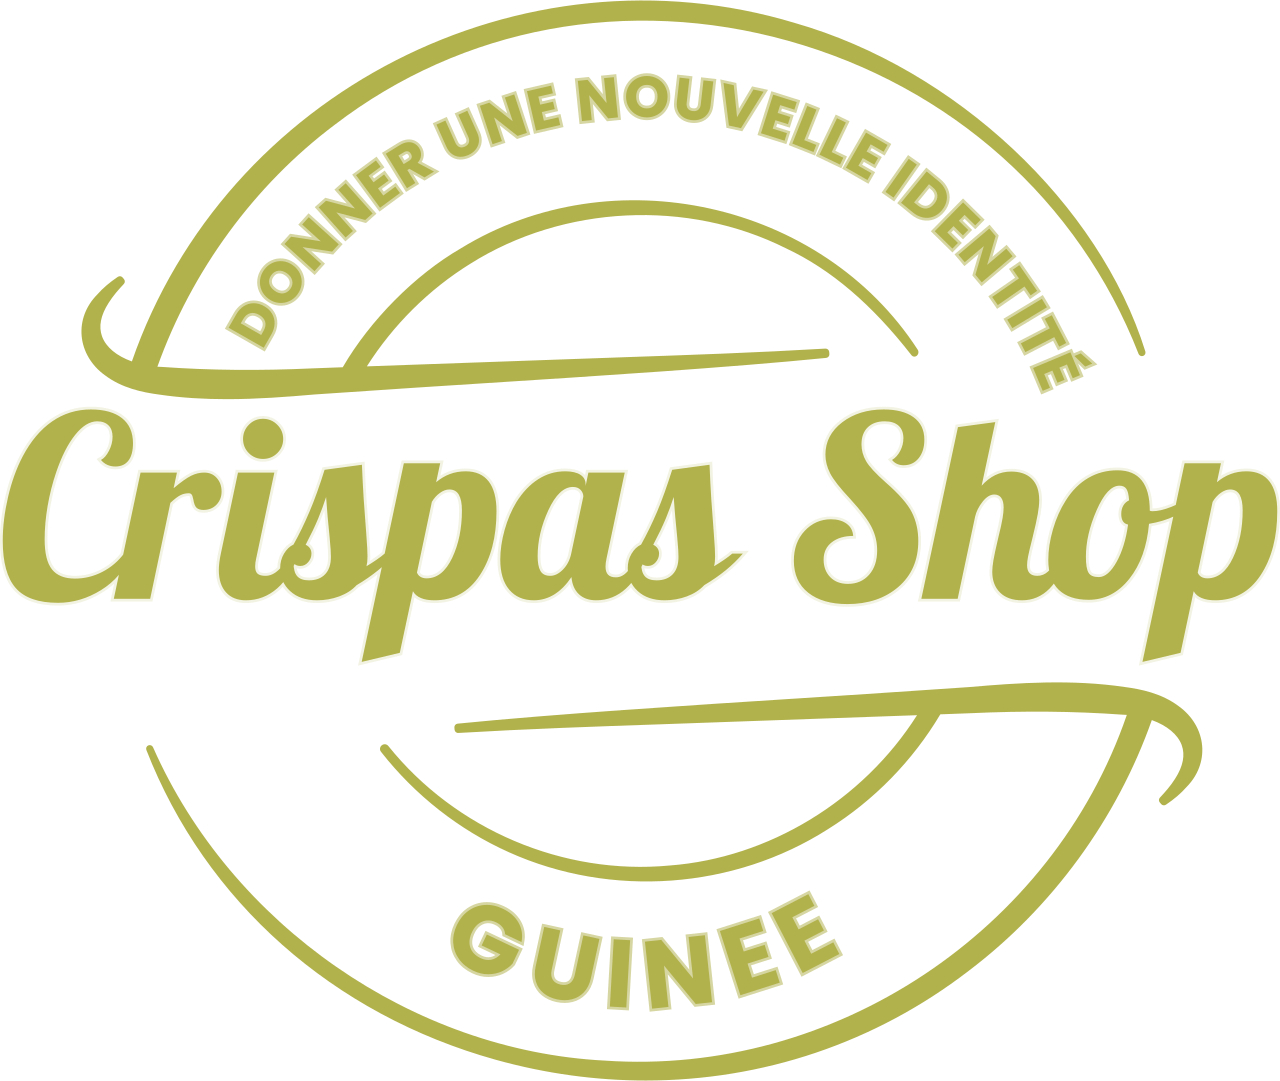 Crispas Shop's web page